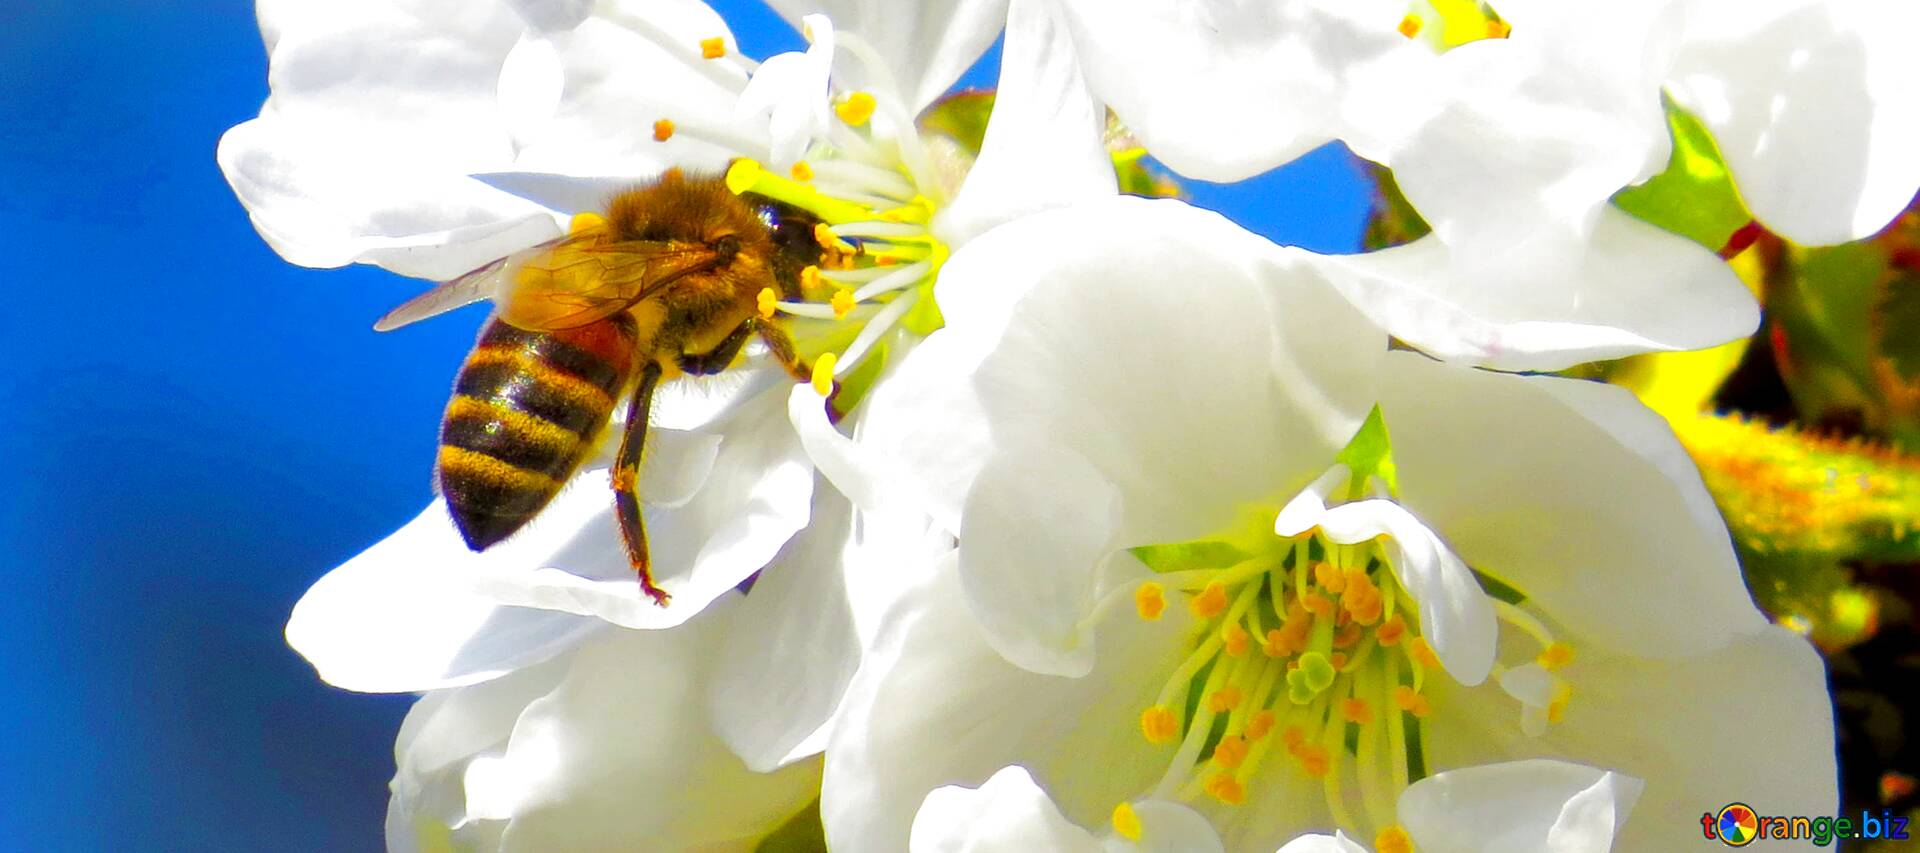 Пчела на цветке сливы